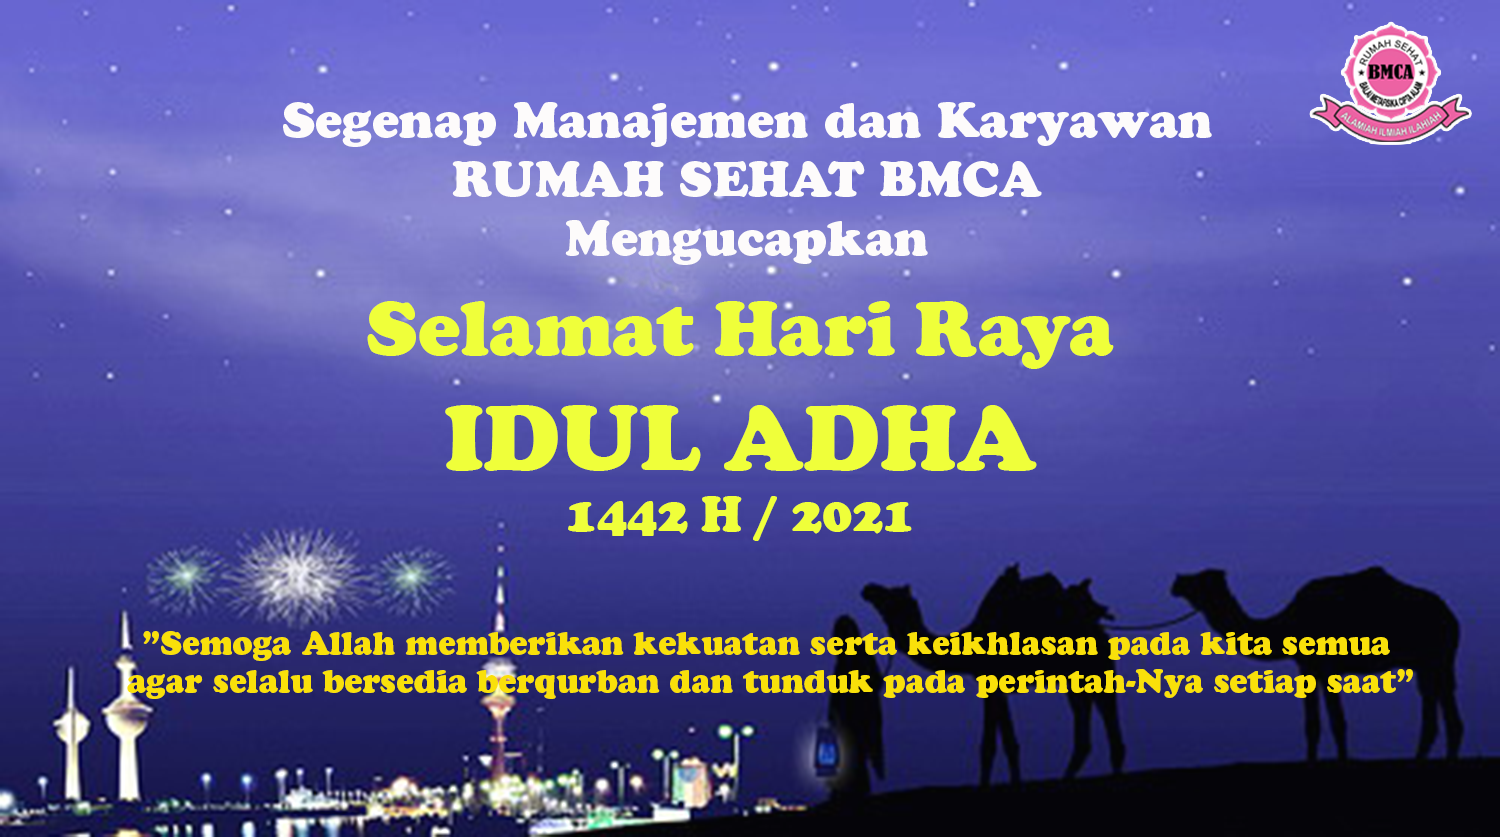 Rumah Sehat BMCA Mengucapkan, Selamat Hari Raya Idul adha 1442 H / 2021.